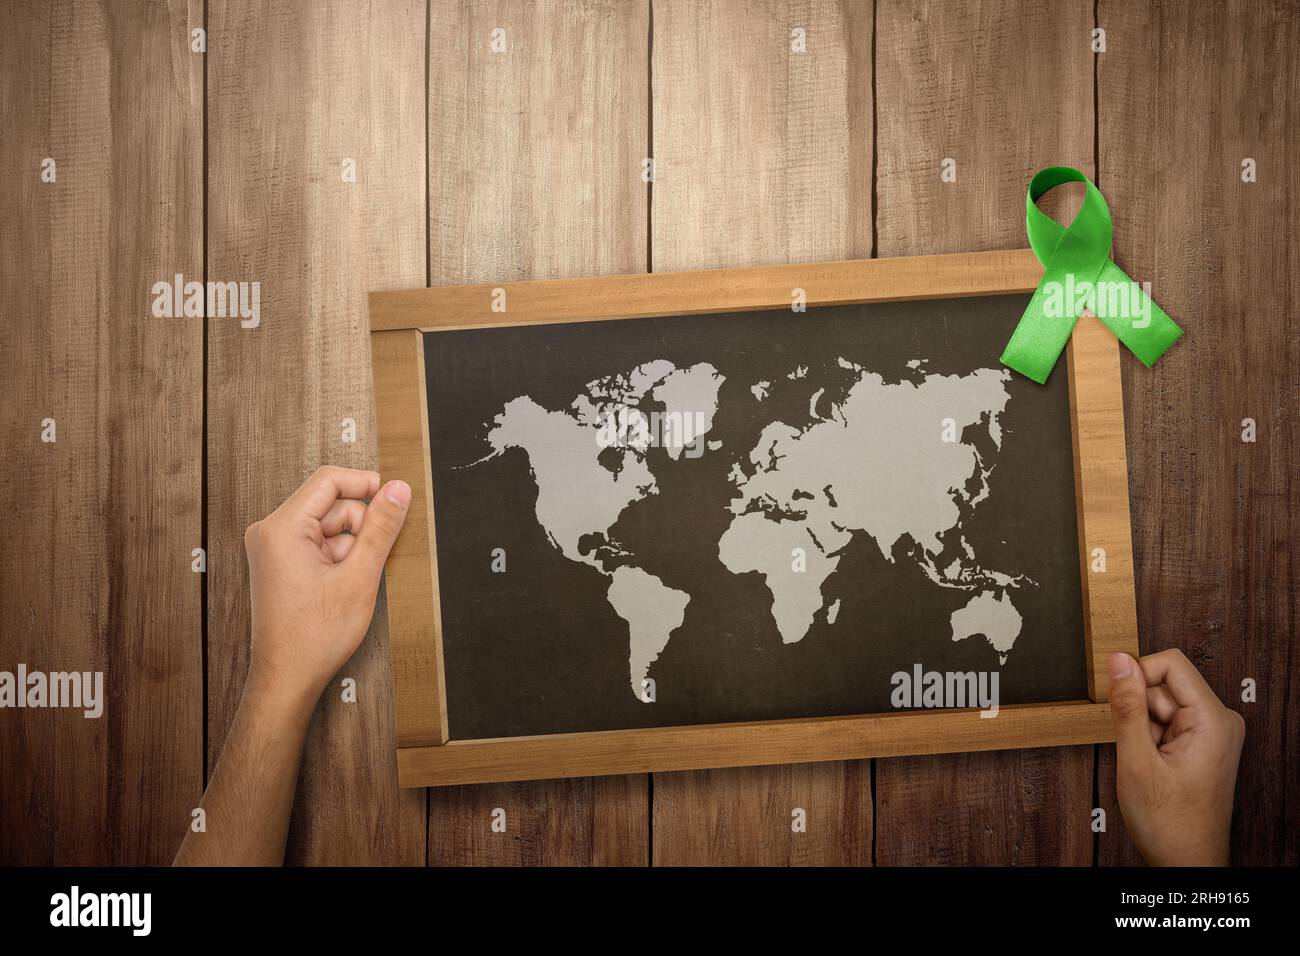 Ruban vert et tableau noir avec carte du monde entier. Concept de journée mondiale de la santé mentale Banque D'Images